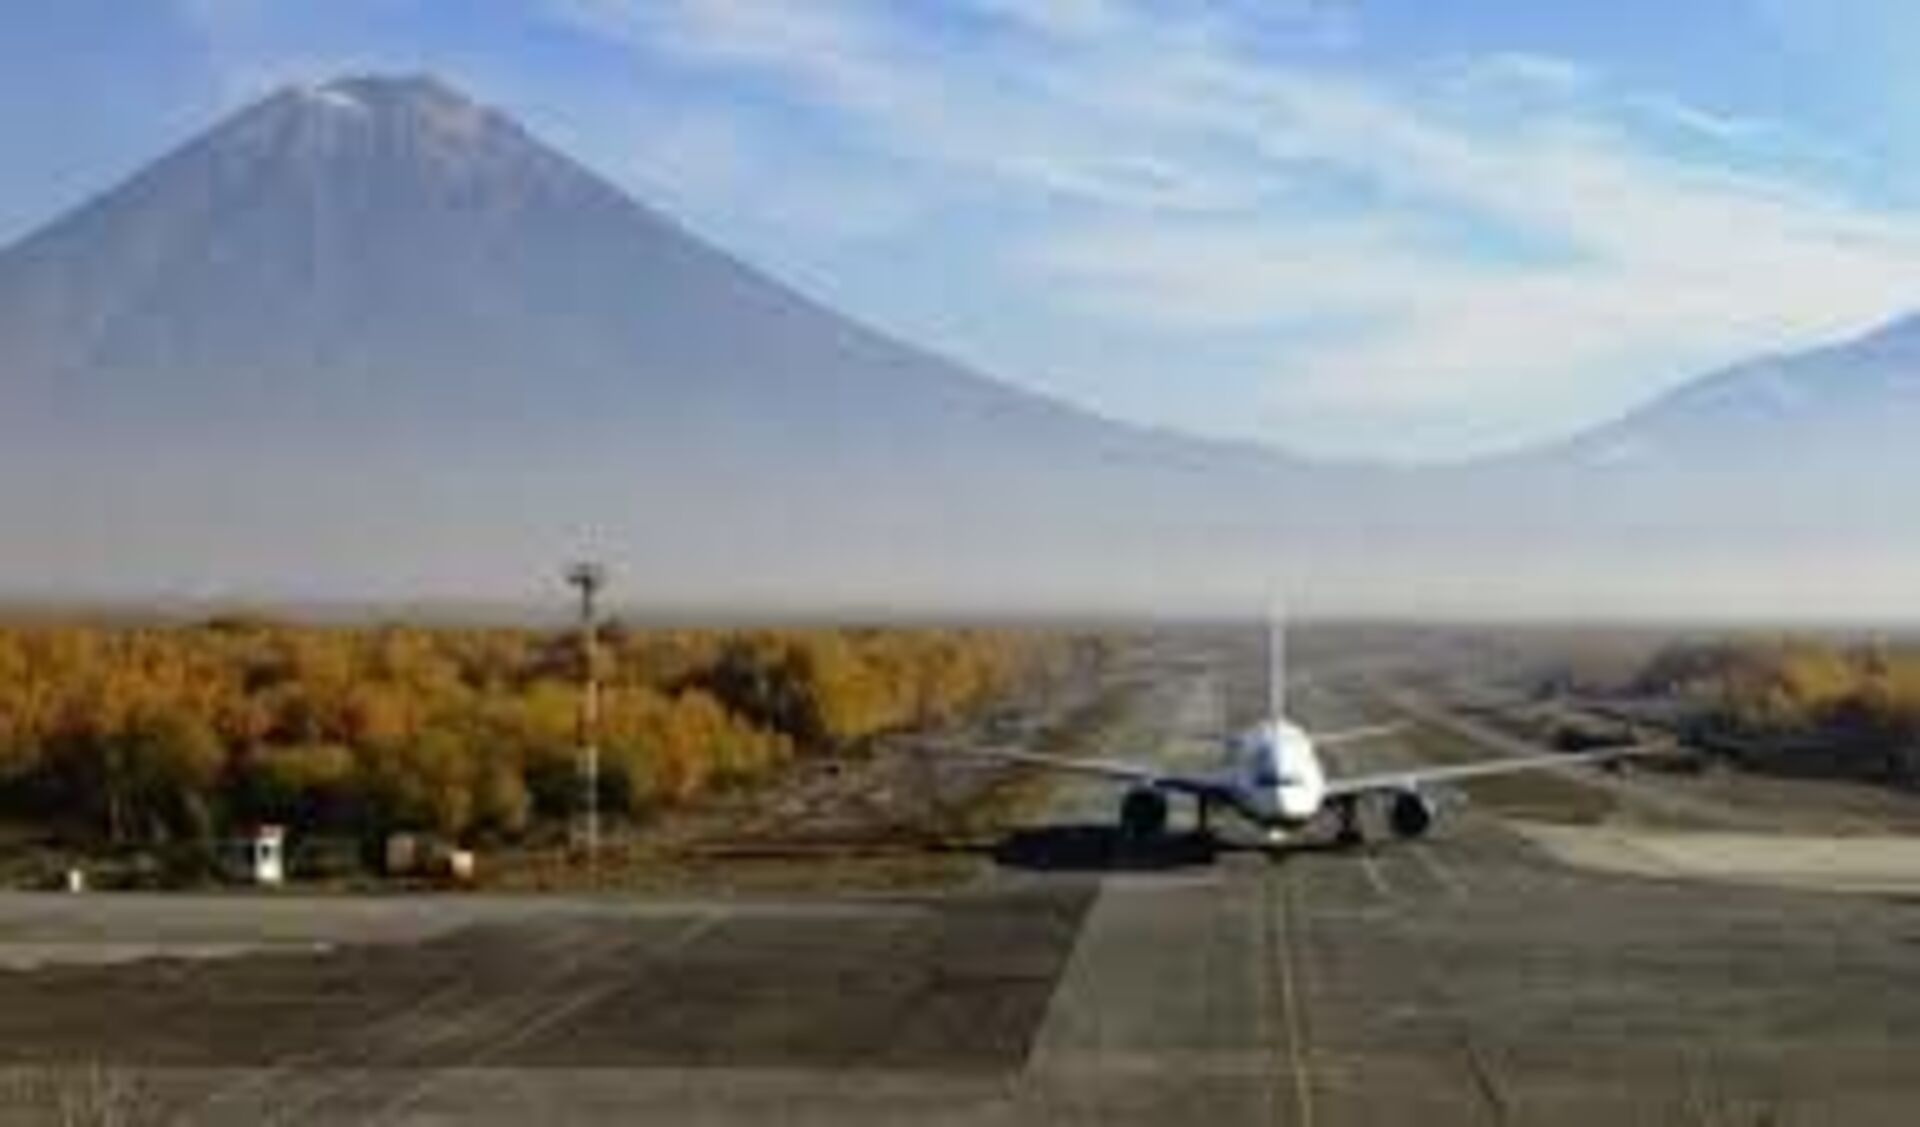 Петропавловск камчатский аэропорт вылета сегодня